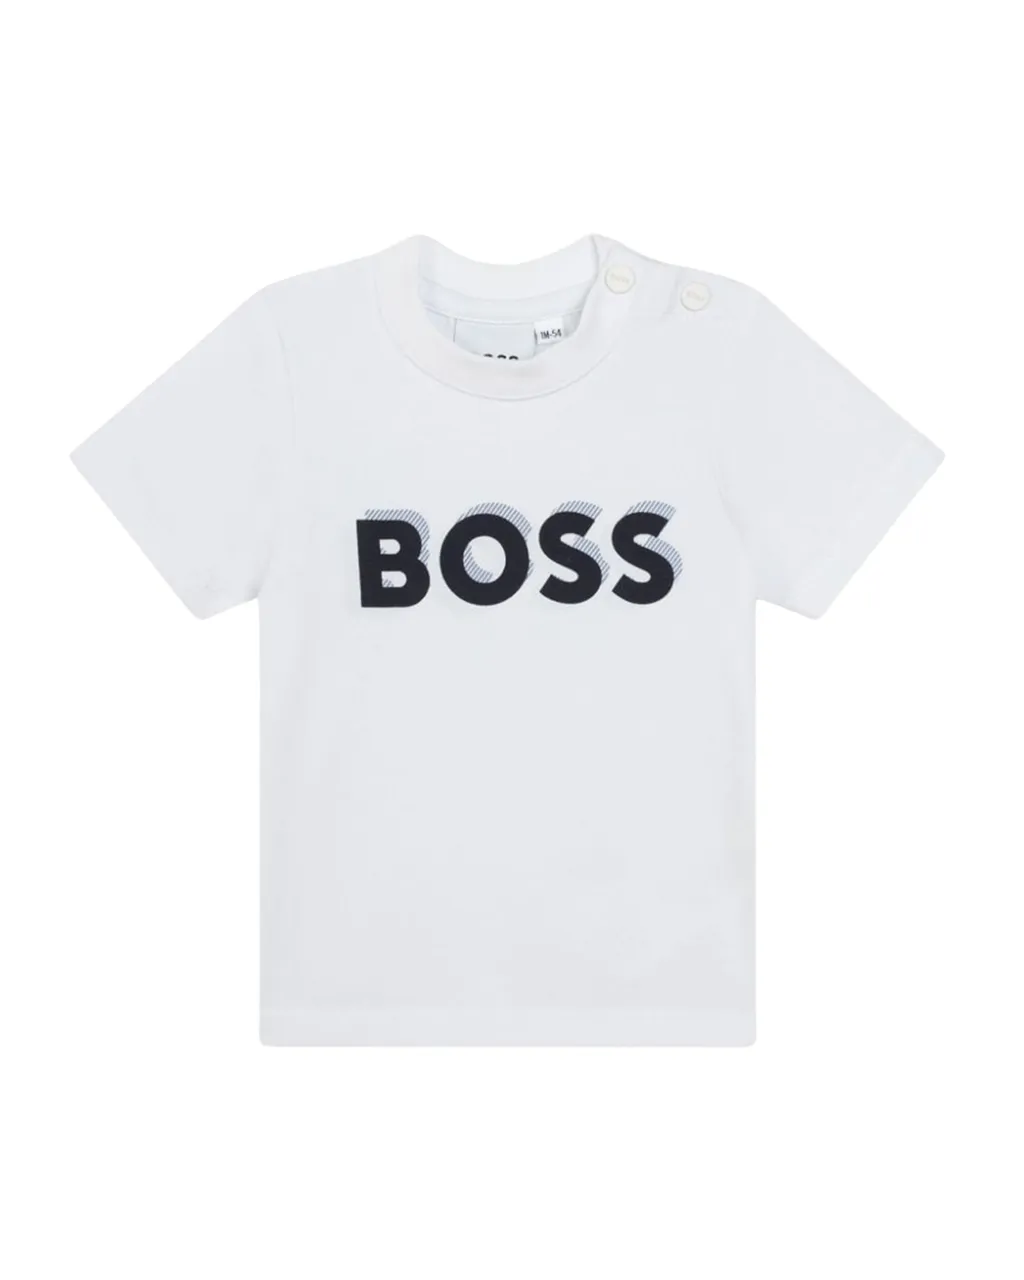 Hugo Boss Junior Set van broek, vest en t-shirt